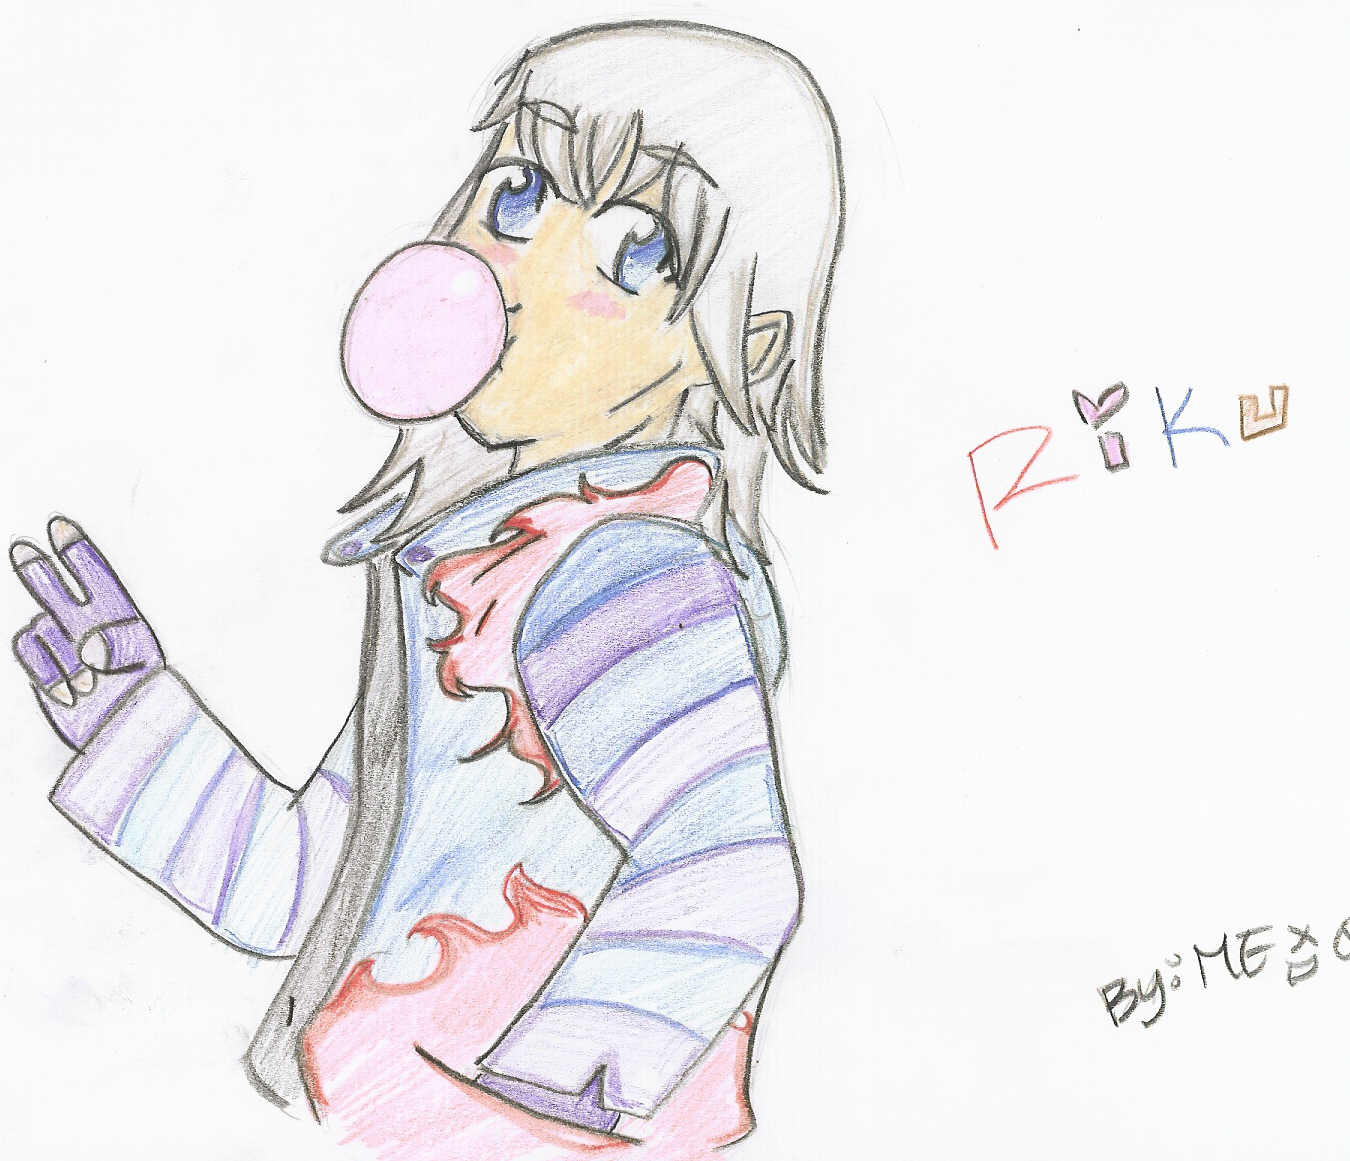 Riku chewing Gum by MEXD